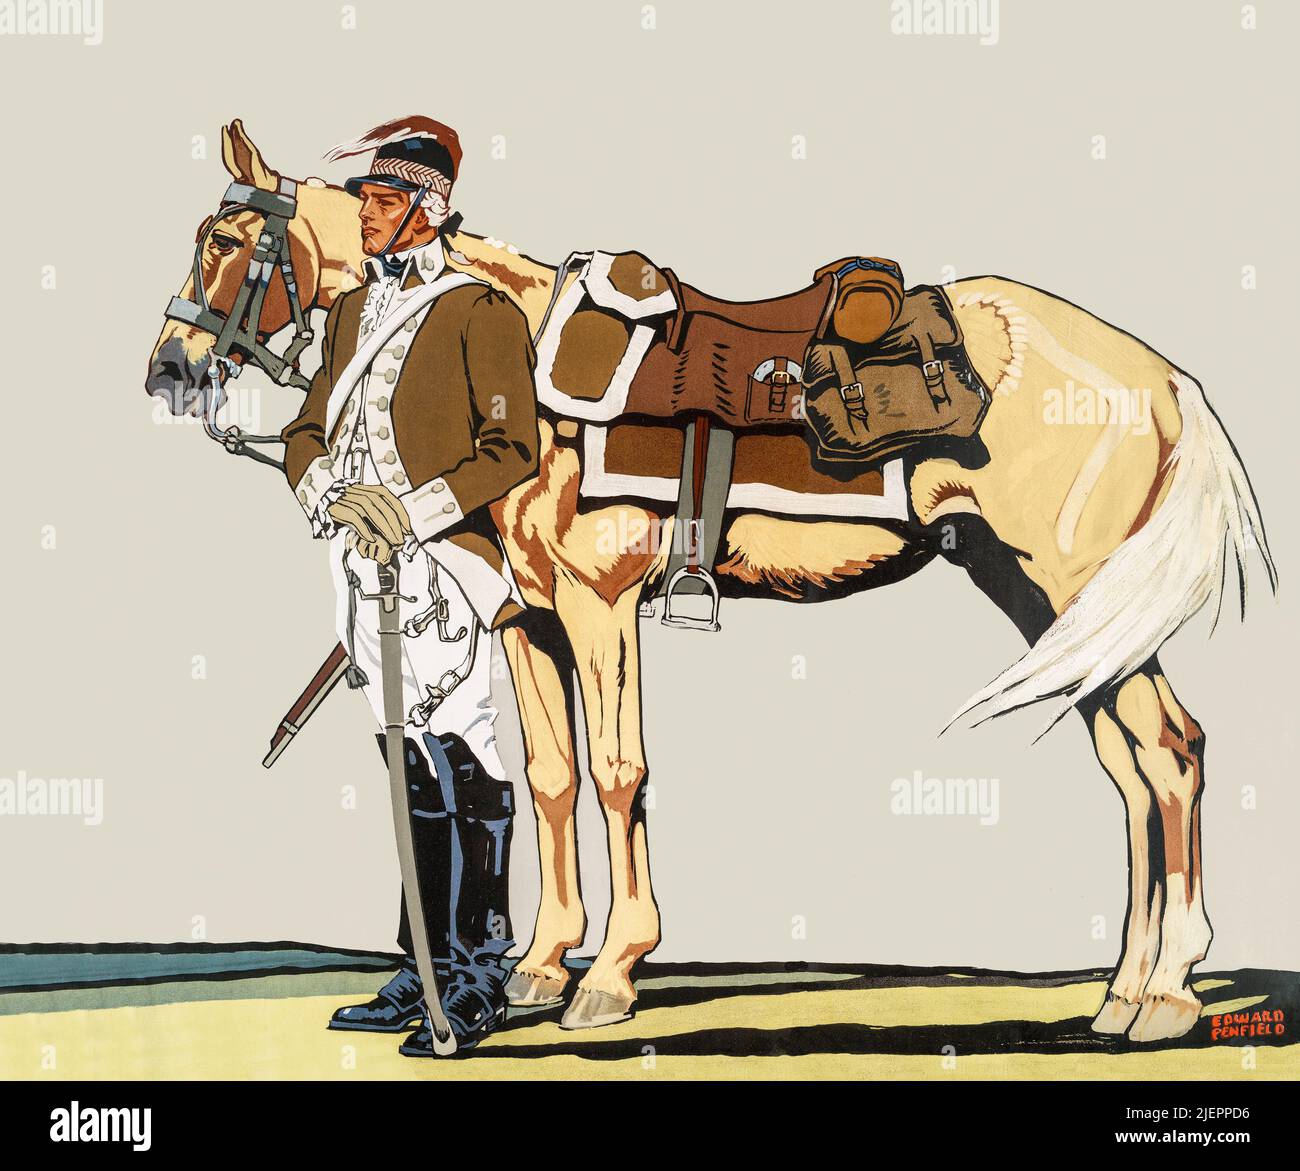 Une illustration publicitaire américaine du début du siècle 20th d'un Philadelphia Light Horse Trooper (1775) par Edward Penfield (1866-1925) pour promouvoir un fabricant de vêtements pour hommes. Banque D'Images